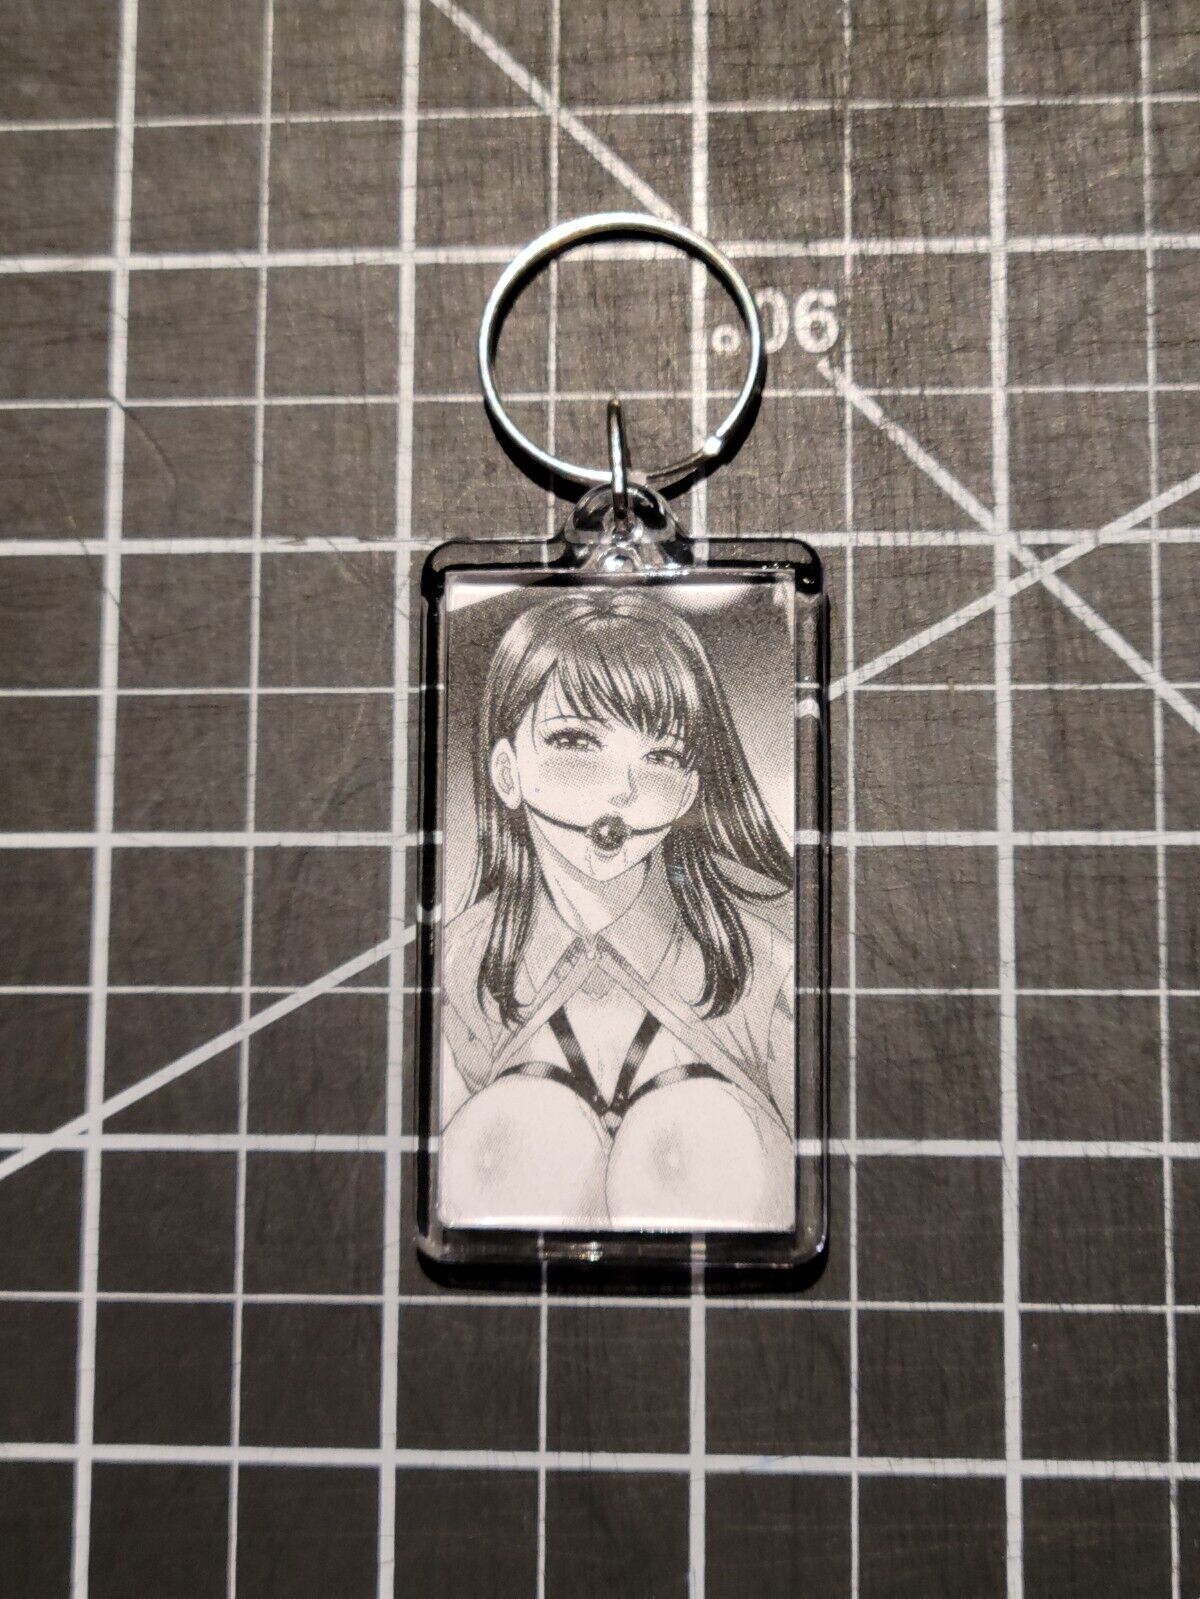 Bondage Ahegao Manga Anime Ecchi Hentai Otaku Waifu Girl Hand-Made Keychain